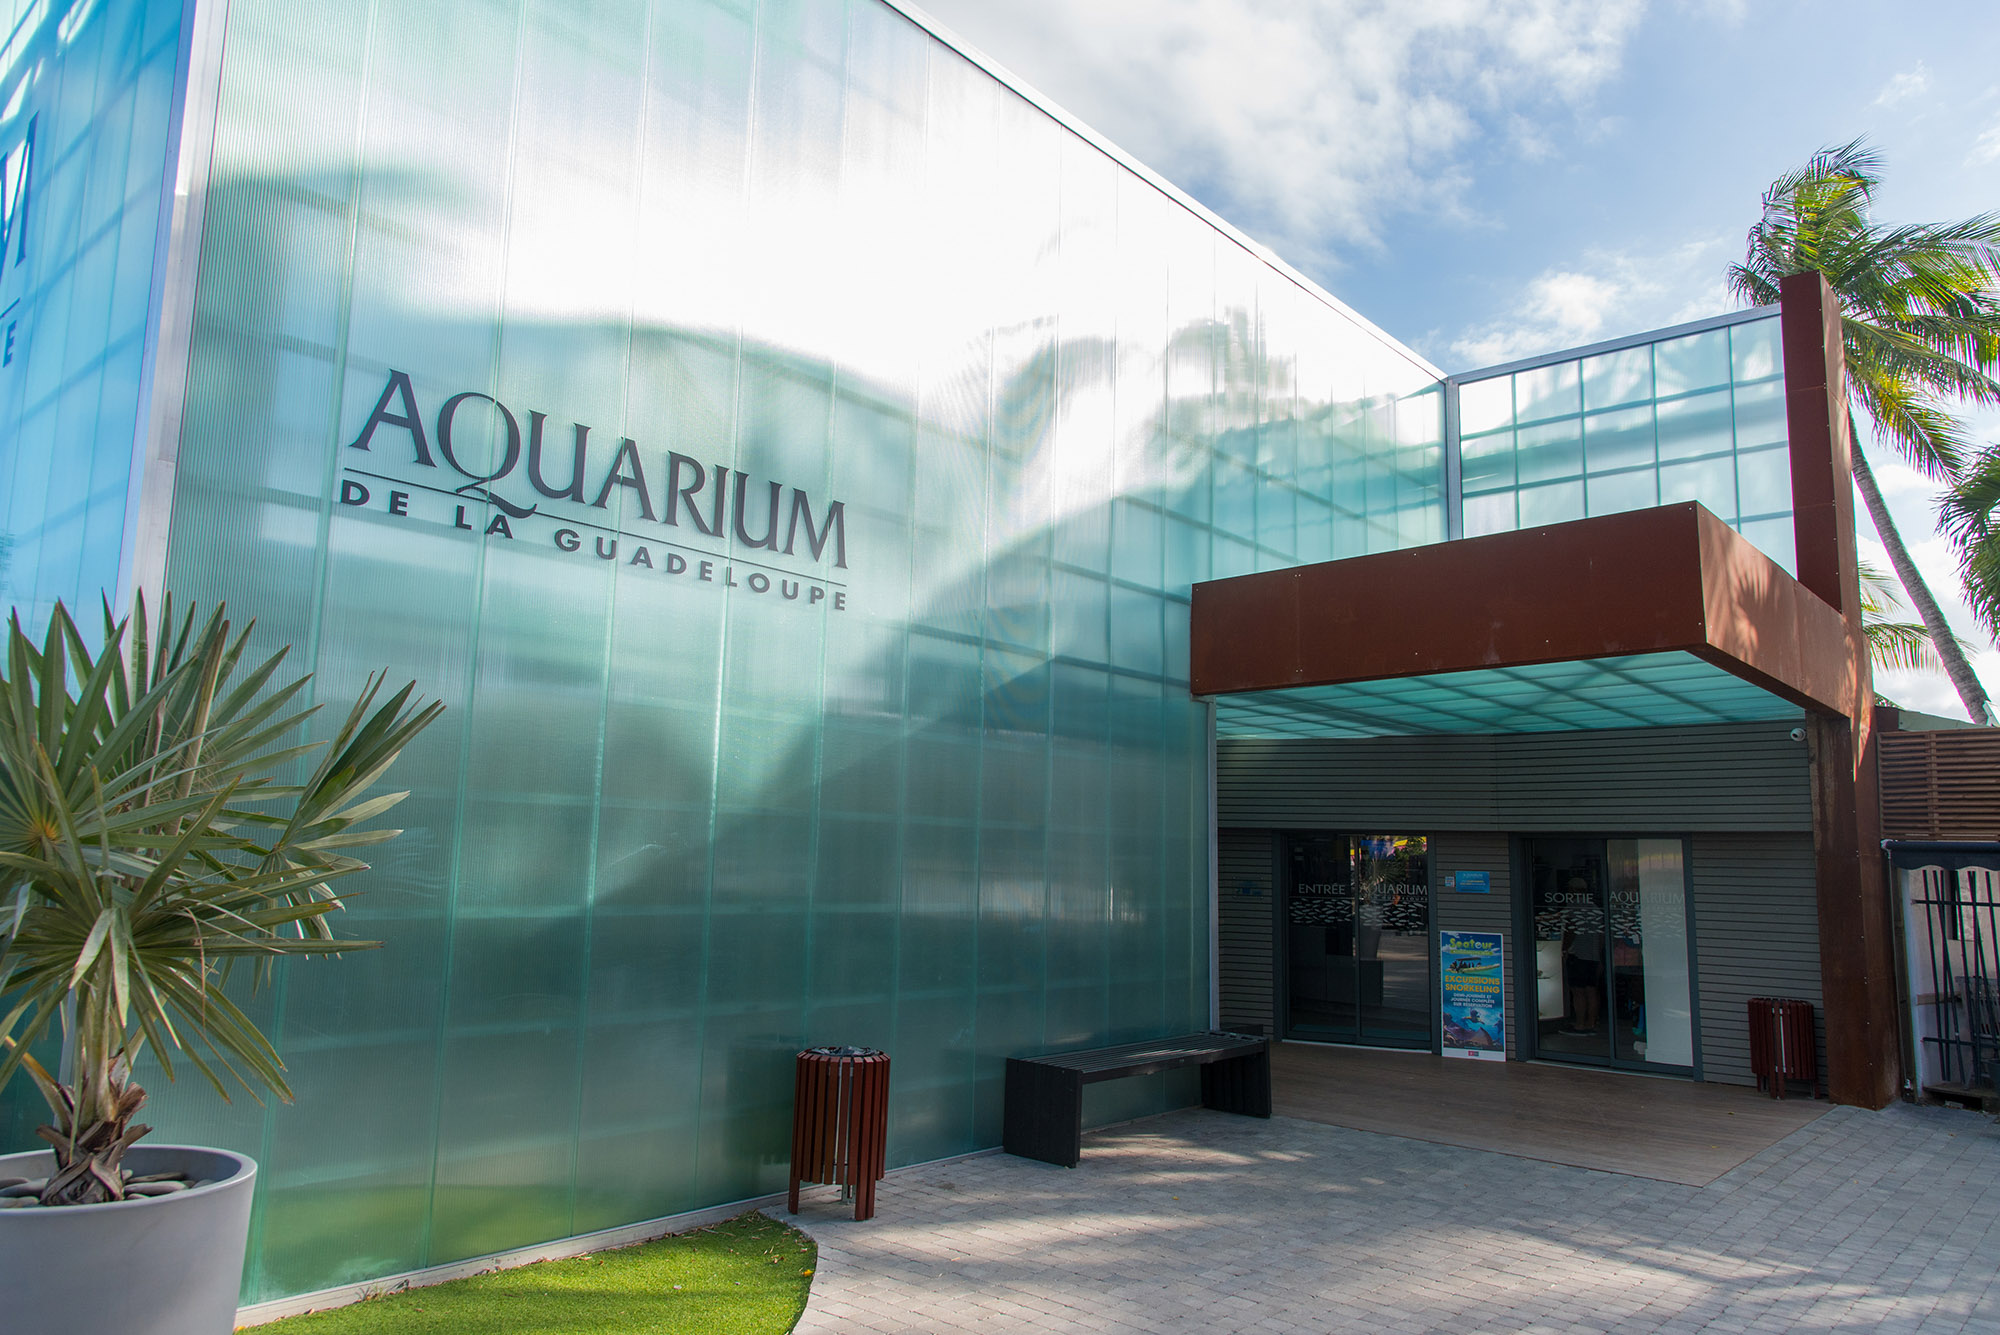 Activité Aquarium de la Guadeloupe offer Aquarium entrée adulte image